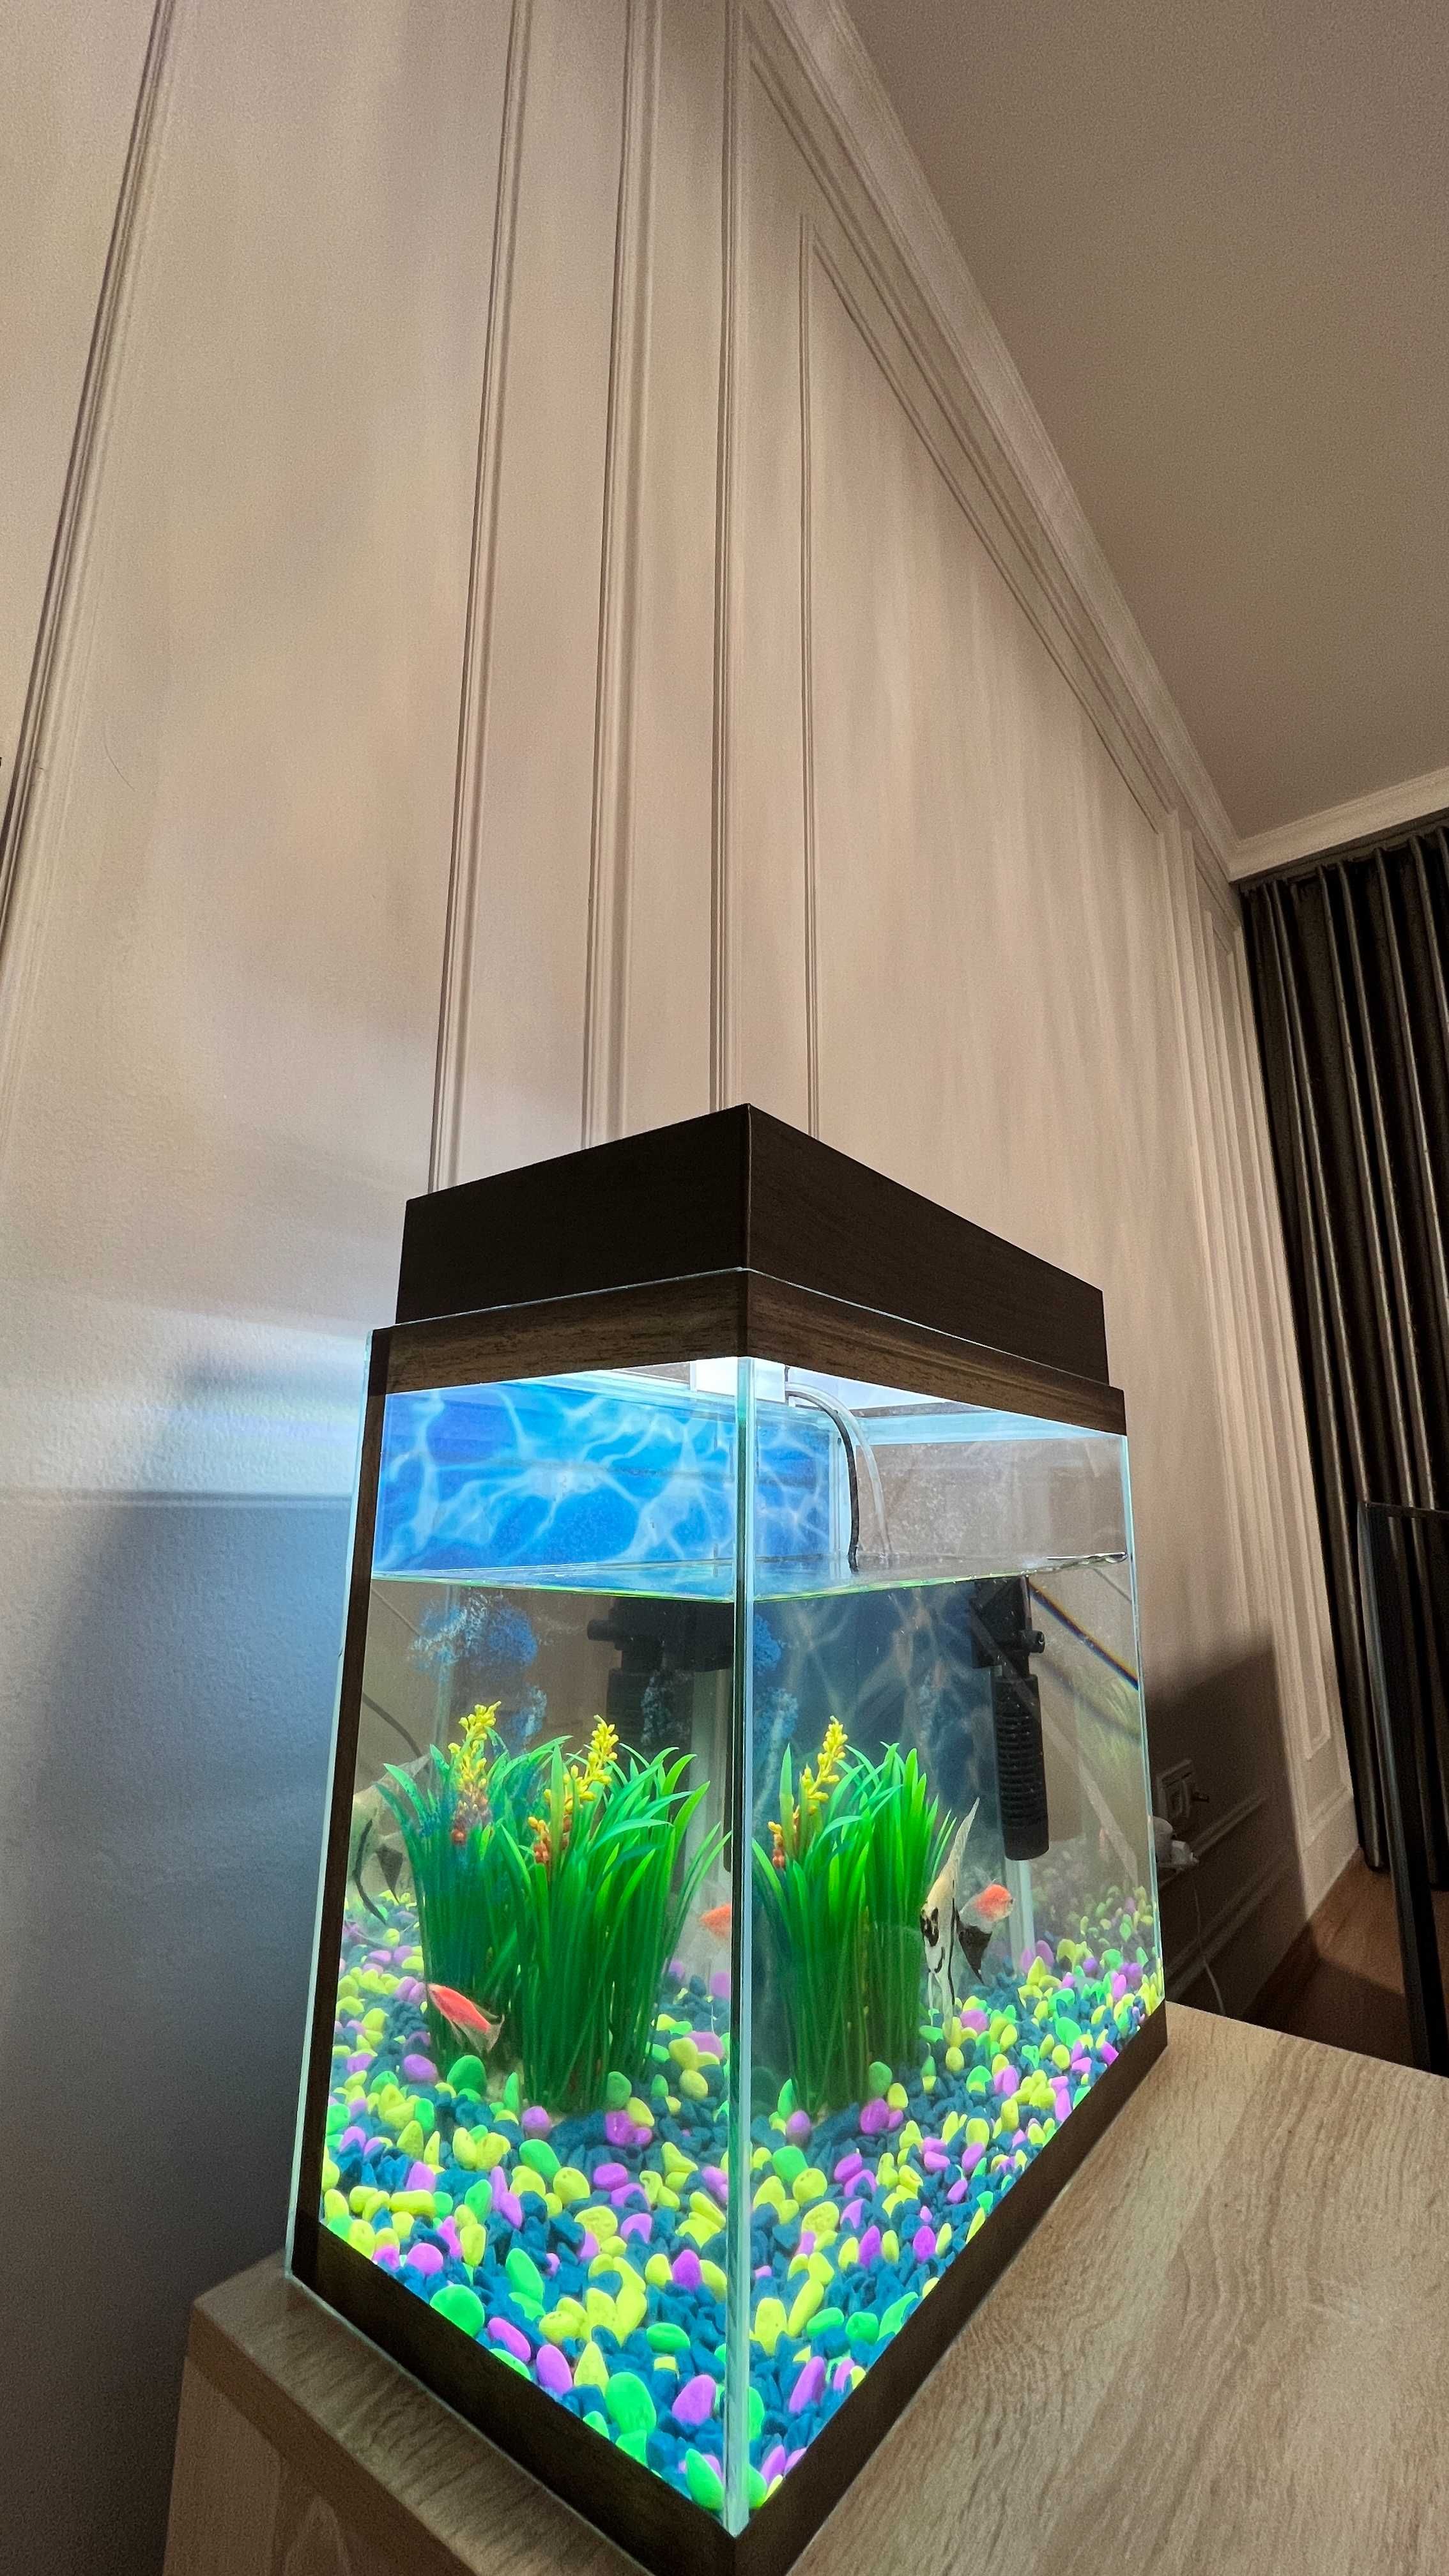 Продам аквариум качественный 25 литров c красивыми дорогими рыбками